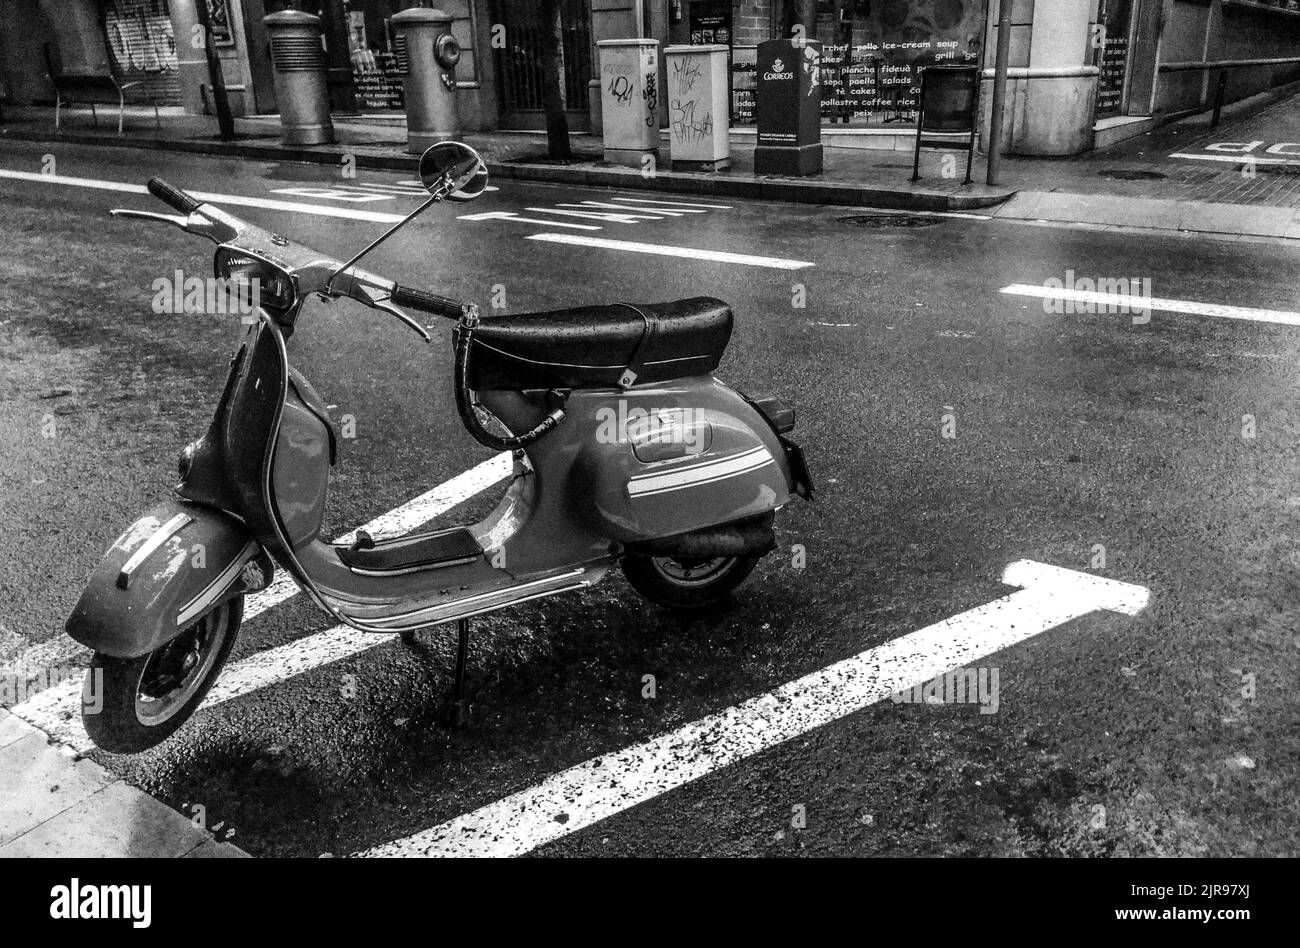 Une photo en niveaux de gris d'un scooter Vespa italien stationné sur la route Banque D'Images